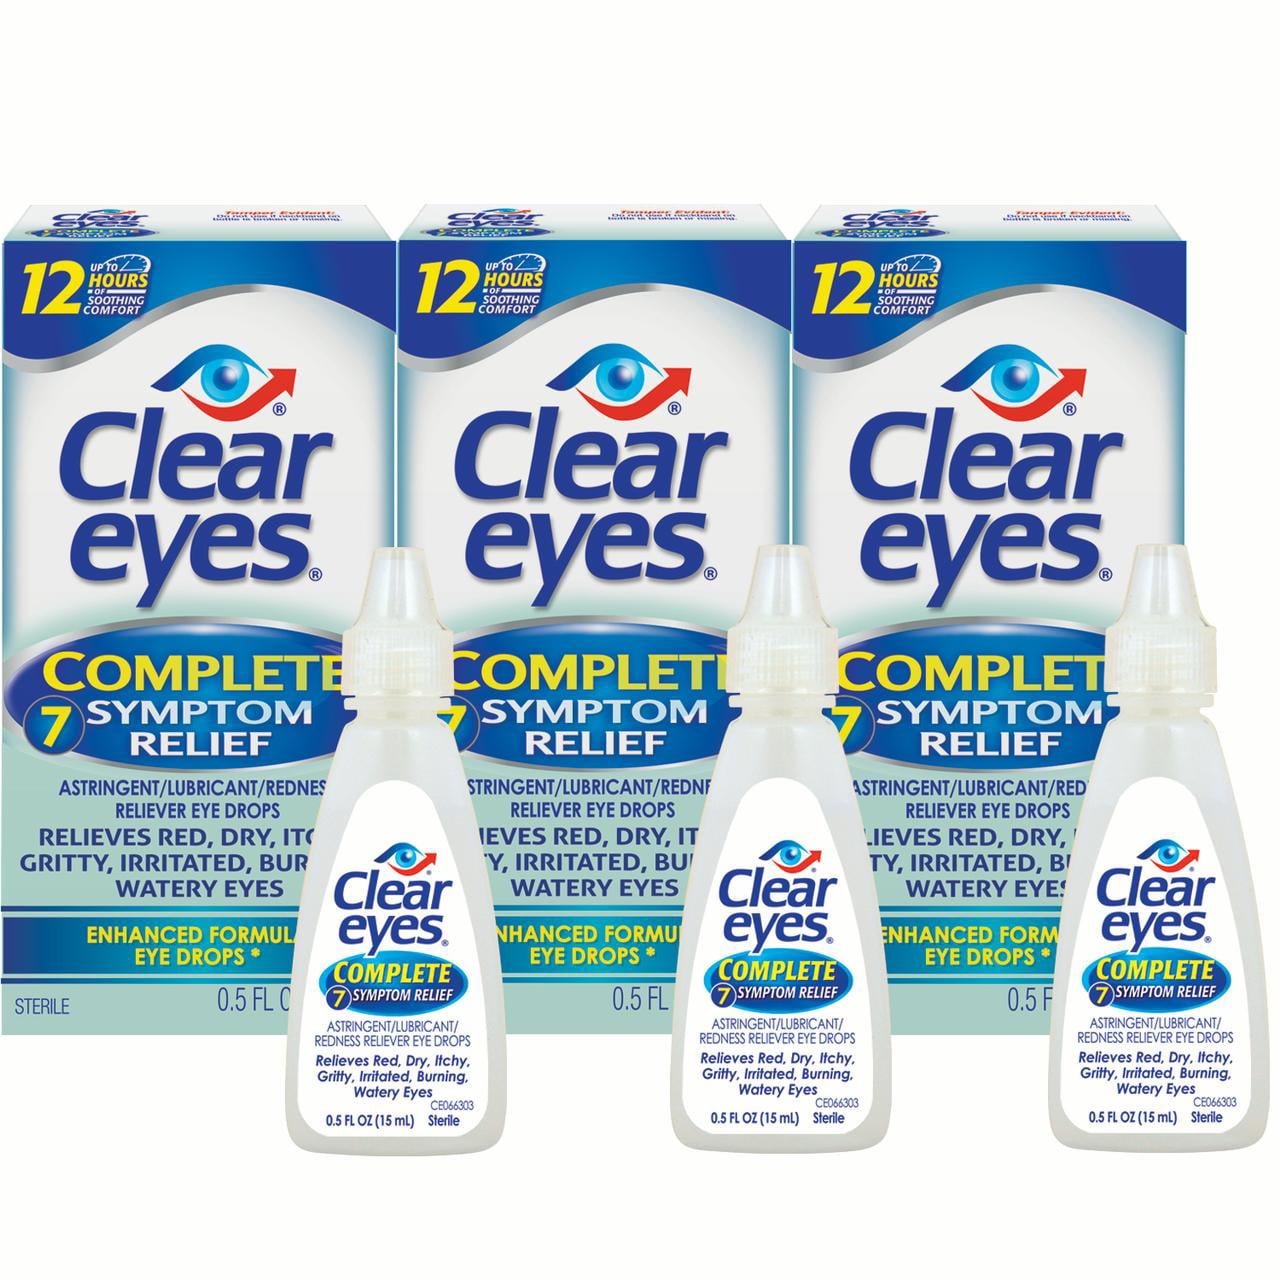 Clear Eyes Complete 7 Symptom Relief Enhanced Formula Eye Drops, 0.5 FL